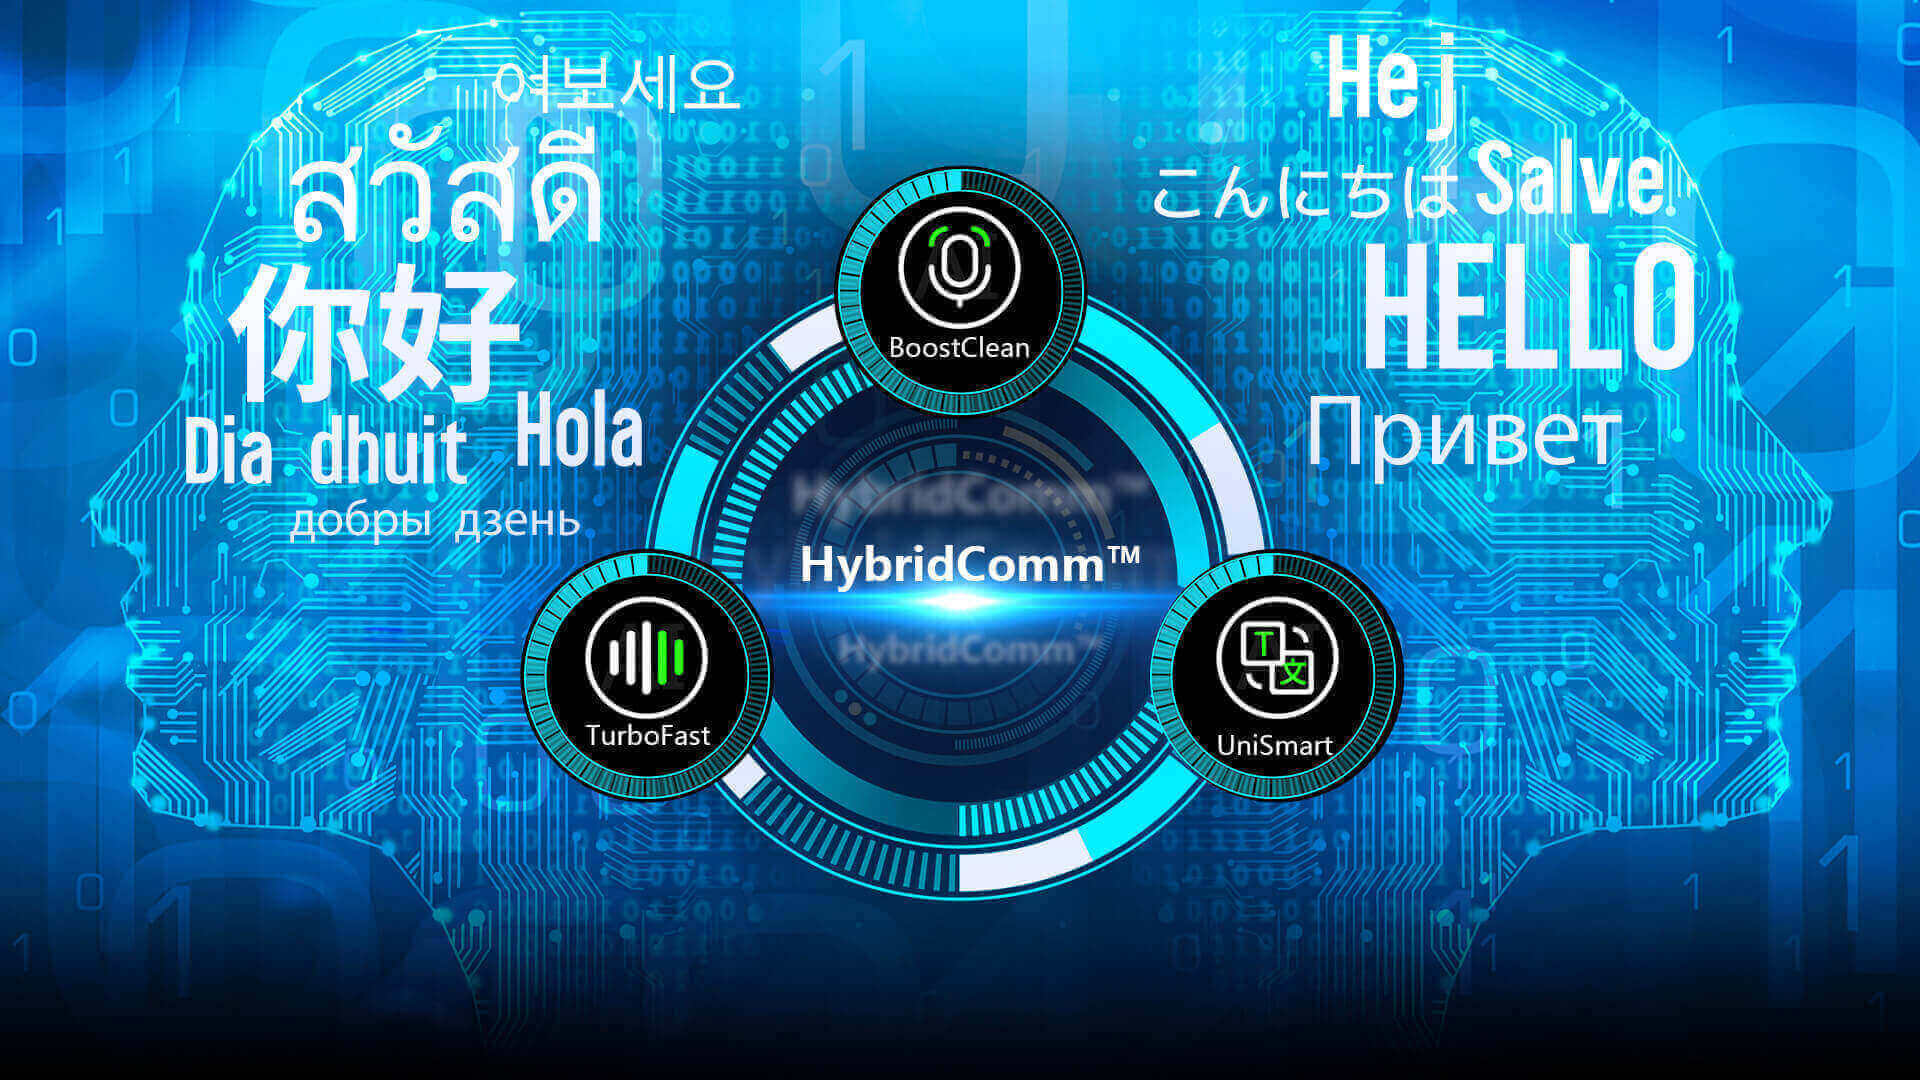 HybridComm